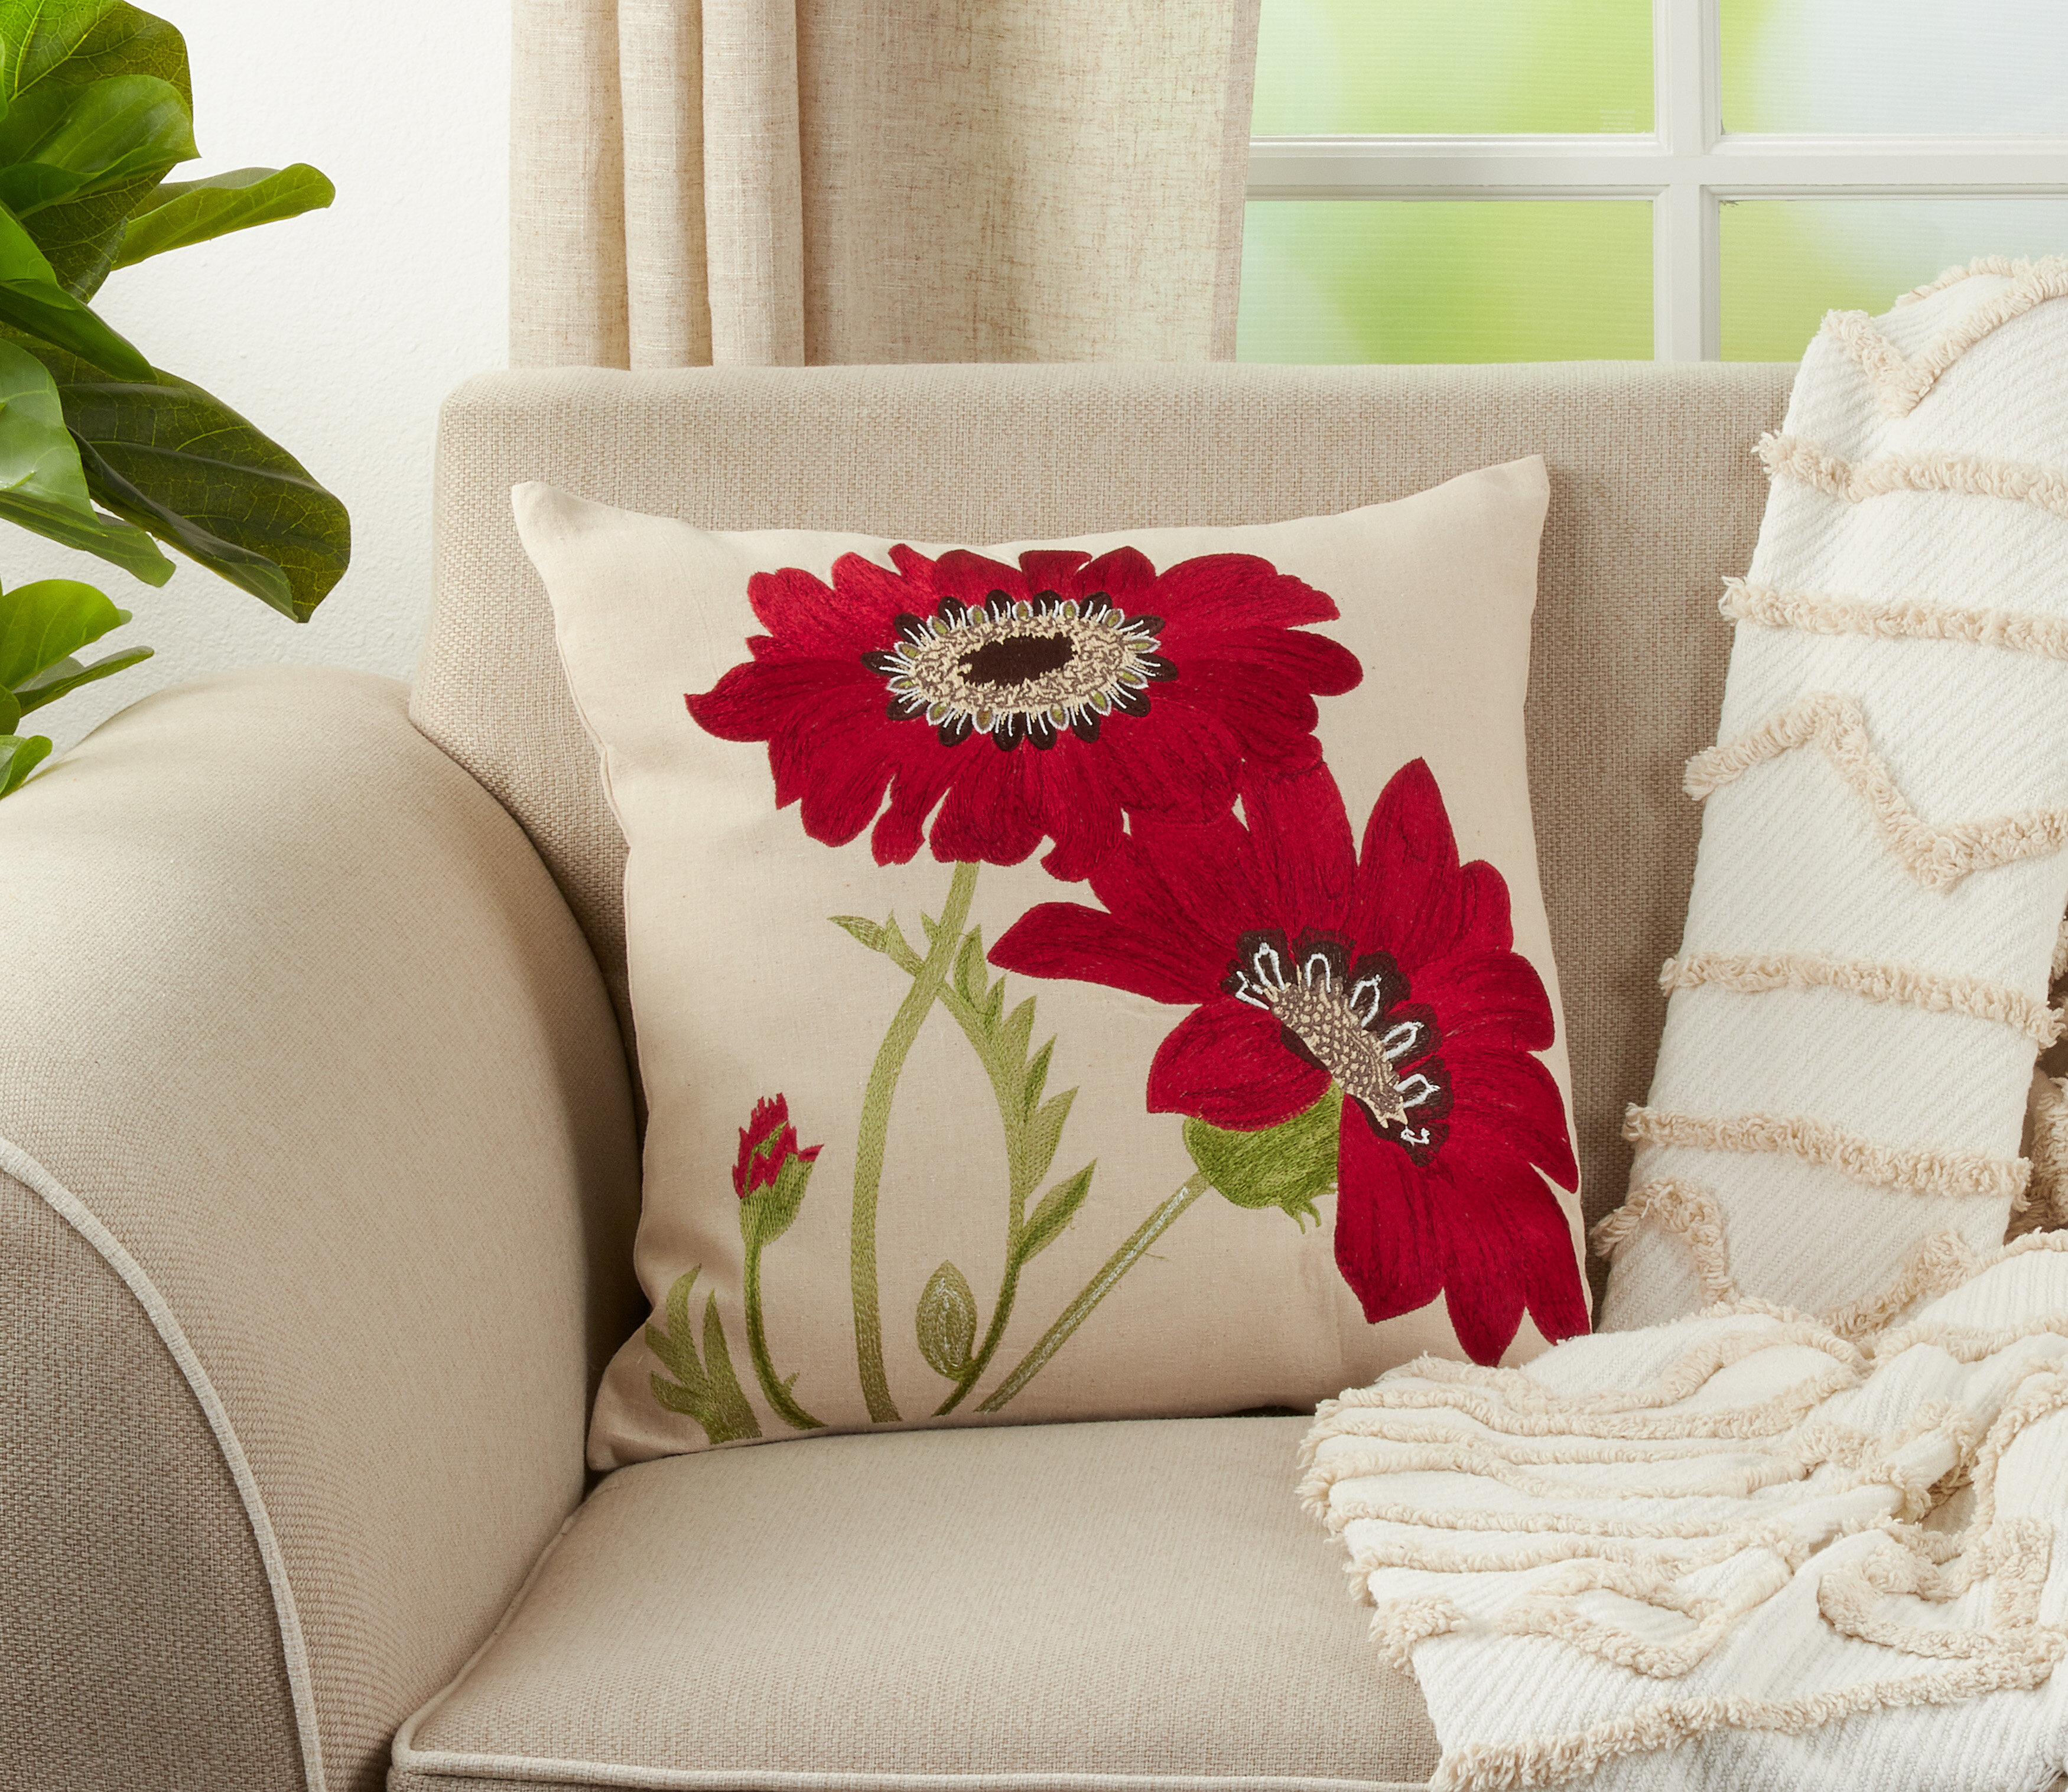 Retro Design Cushion Cover Pillow Case Red Bird Rose Flower Home Decoration Xmas 